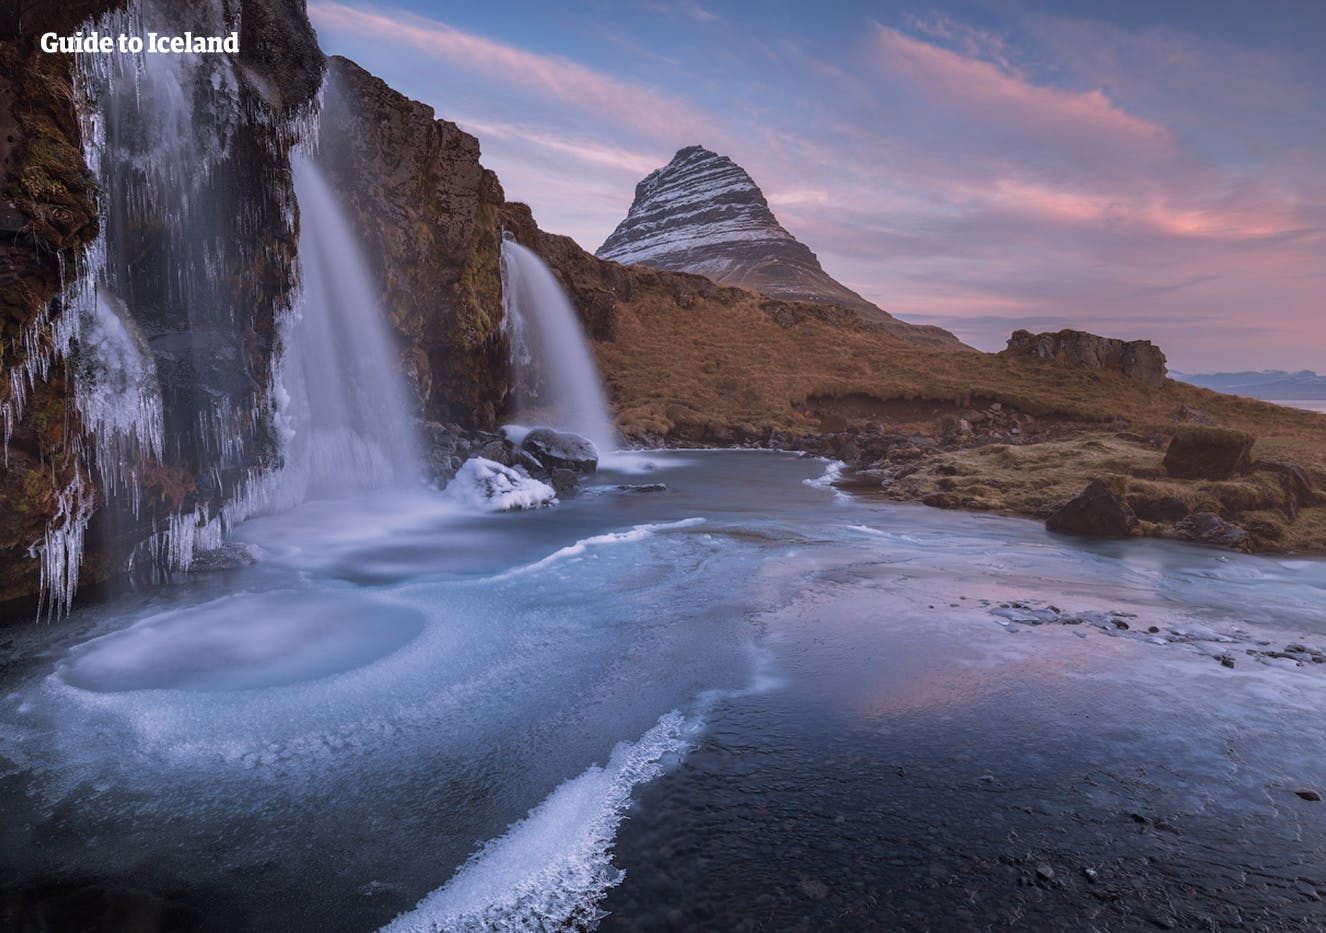 La montagne emblématique de Kirkjufell sur la péninsule de Snæfellsnes a été décrite comme «la montagne comme une pointe de flèche» par Hound dans Game of Thrones.